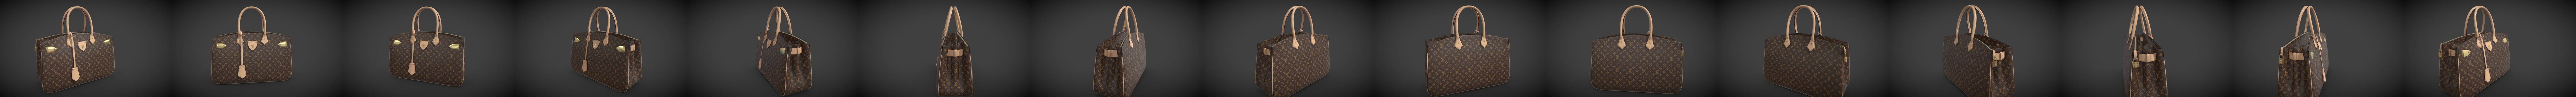 Louis Vuitton Bag Twist Epi Love Heart Leather 3D model